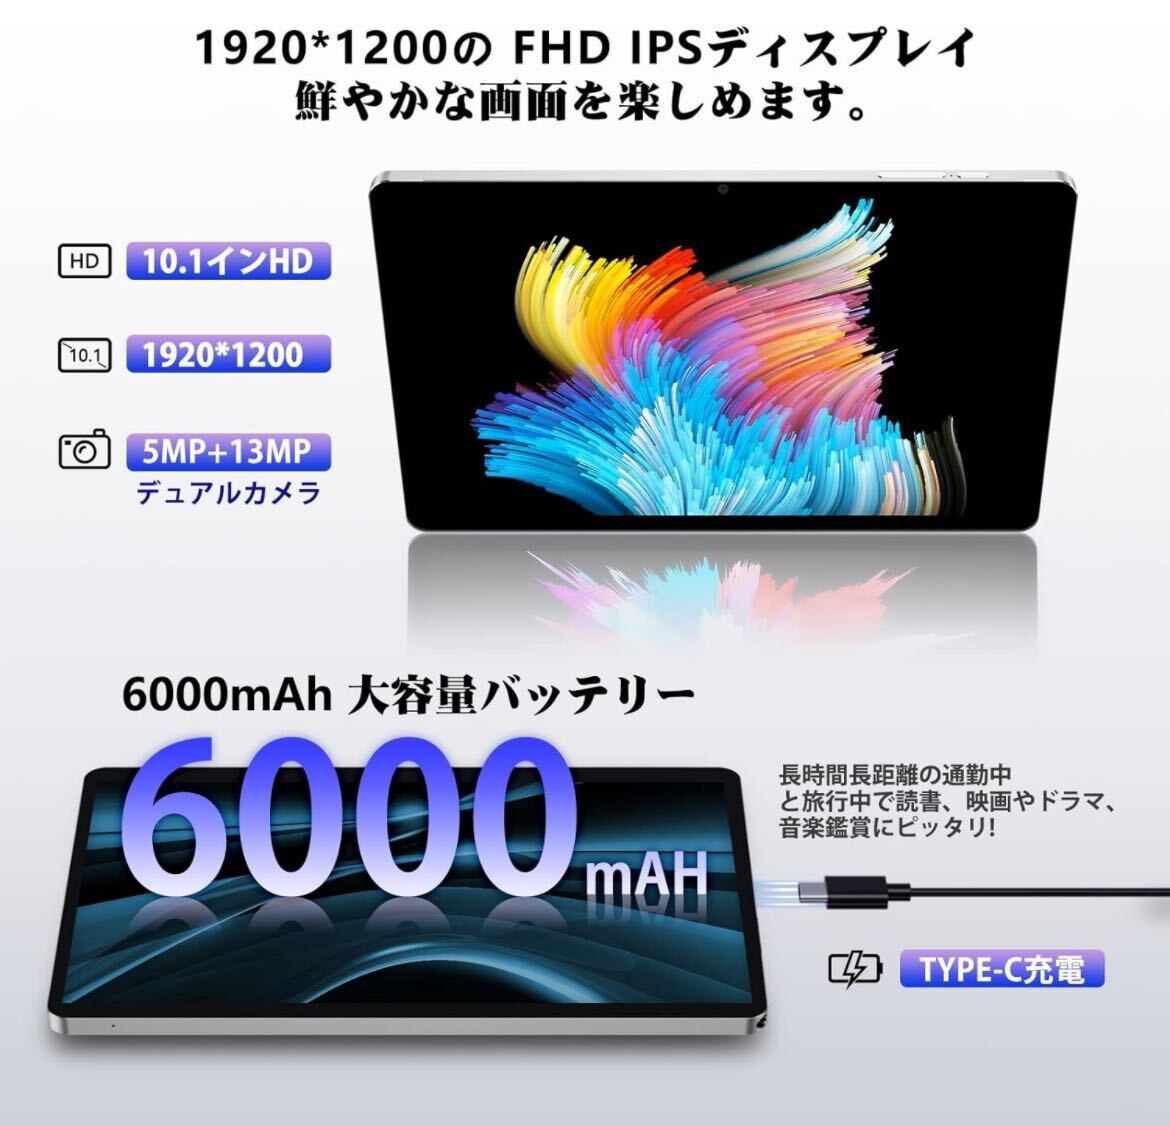 タブレット 10インチ 8コアCPU SIMフリー 1920*1200解像度 1TB TF拡張可能 6000mAh ４つのスピーカー Type-C 2.4G/5G wi-fiモデル_画像4